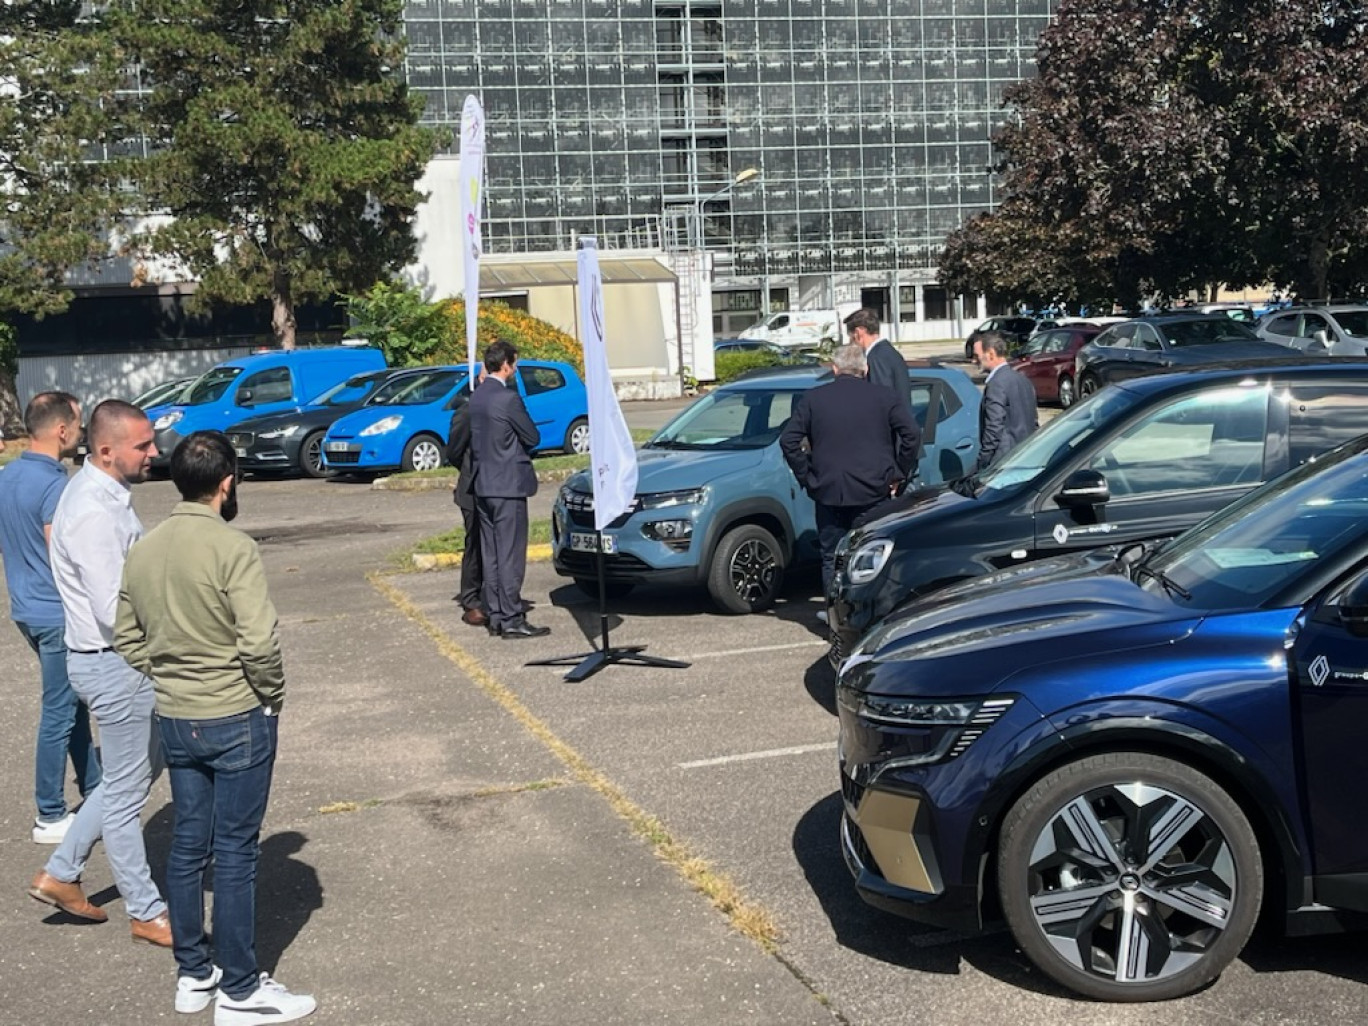 Les salariés d’Enedis Bourgogne ont profité d’une pause déjeuner pour découvrir des véhicules électriques, sous l’impulsion de leur employeur. (© Enedis Bourgogne)